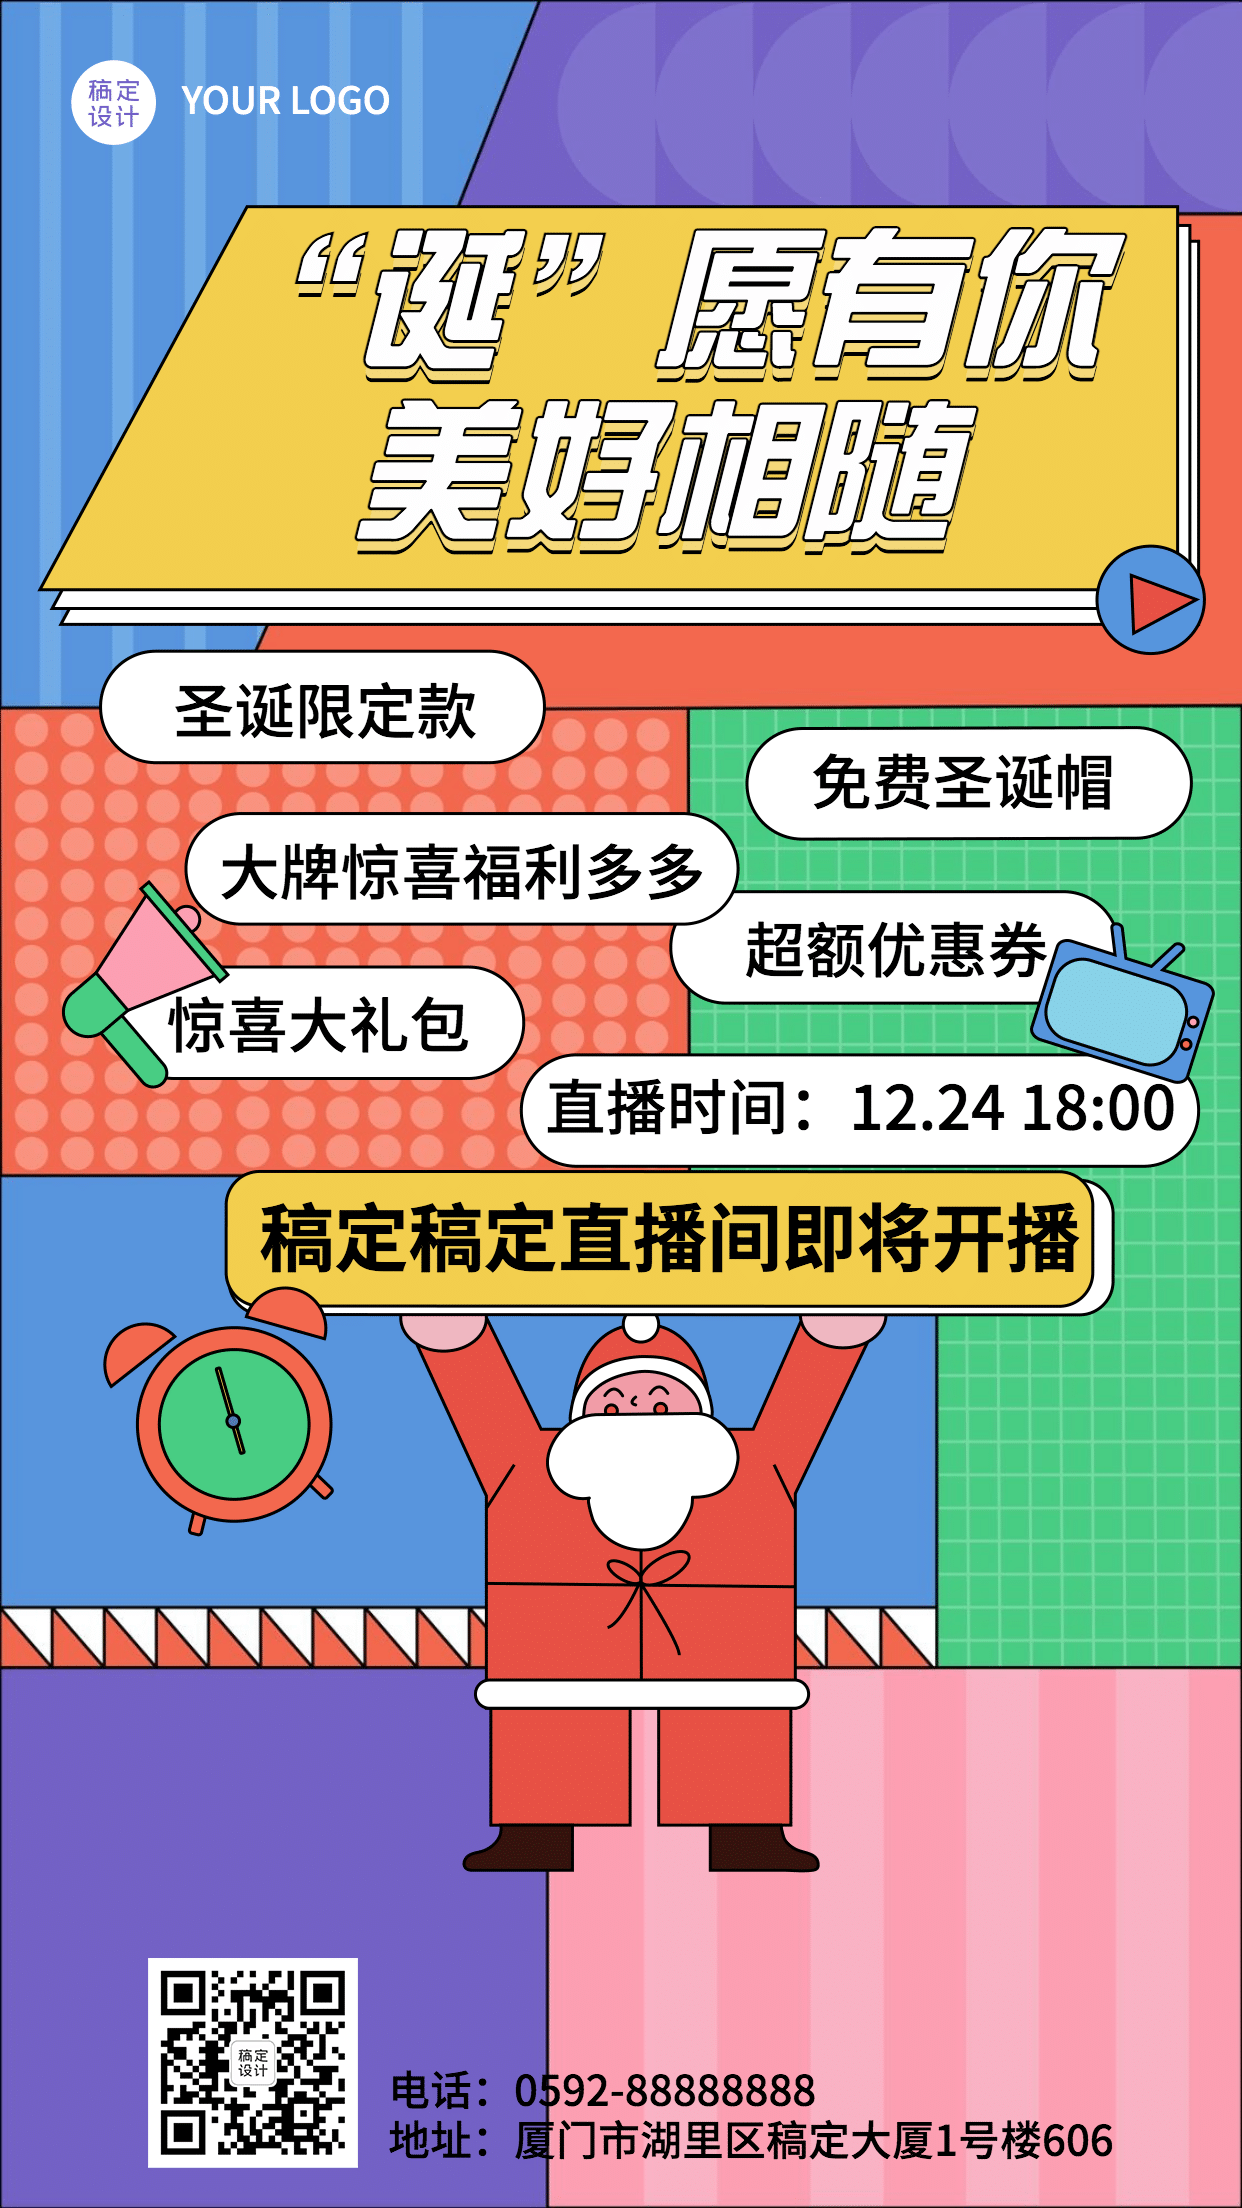 圣诞节直播预告活动圣诞老人插画手机海报